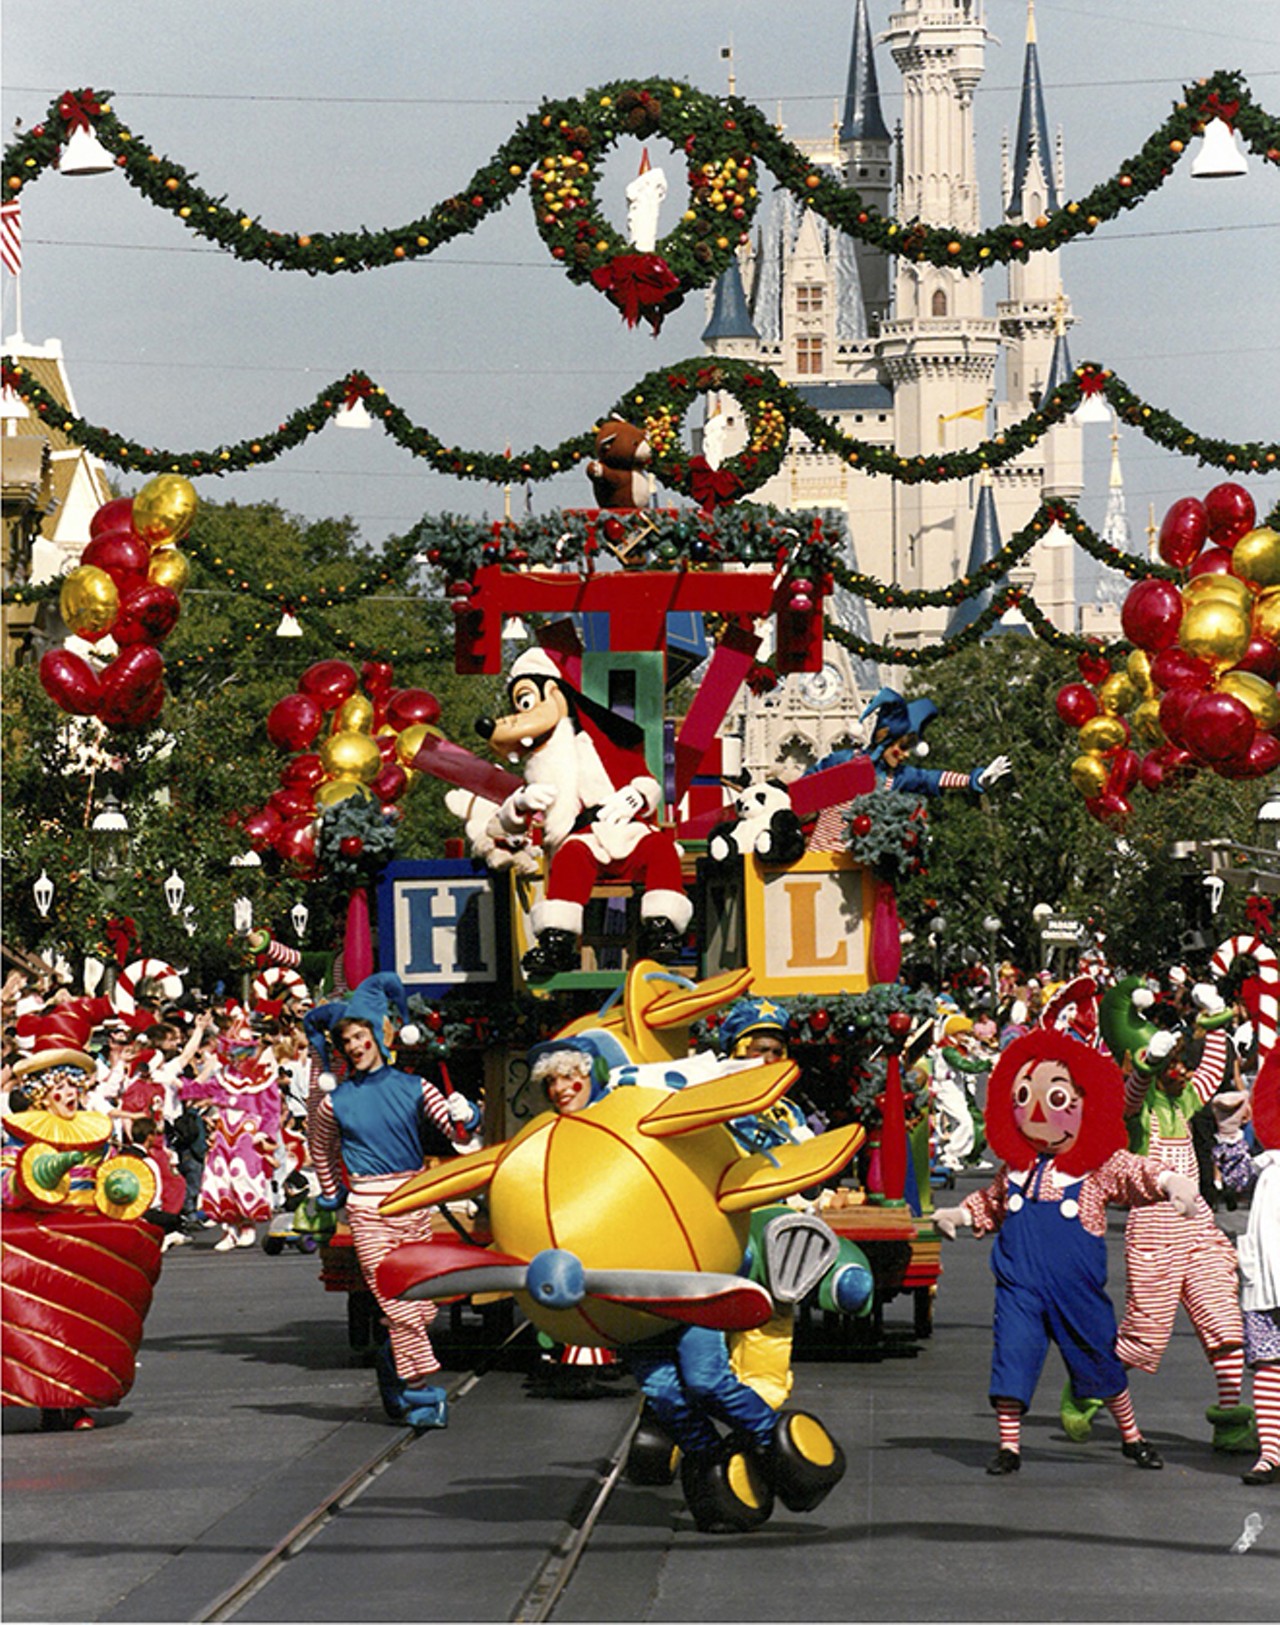 Santa Goofy at Mickey's Very Merry Christmas Parade at Walt Disney World. 1993.